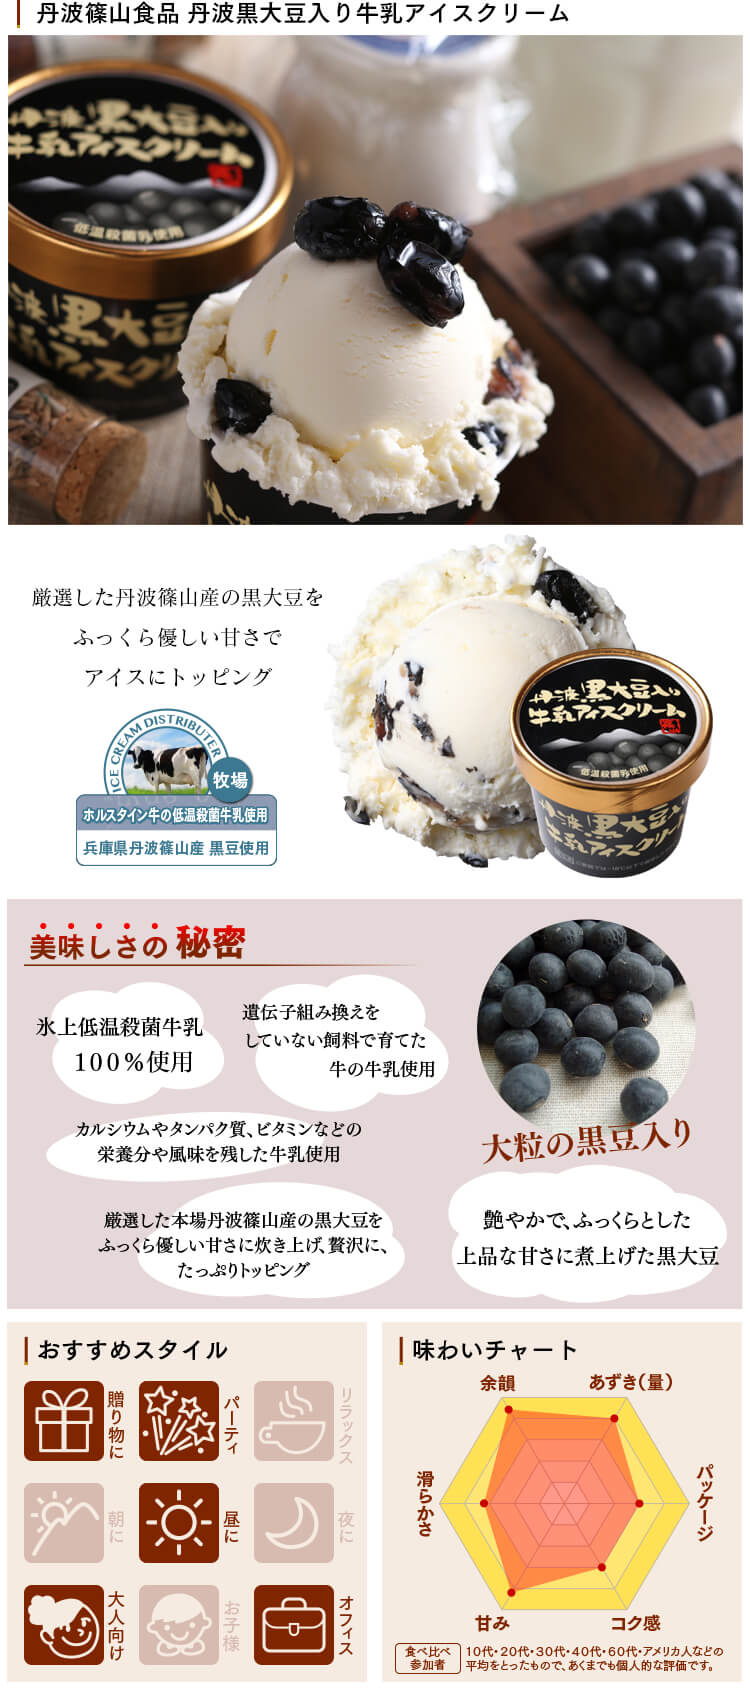 丹波篠山食品 丹波黒豆入り牛乳アイスクリーム | 極上あずき | やまざと.com